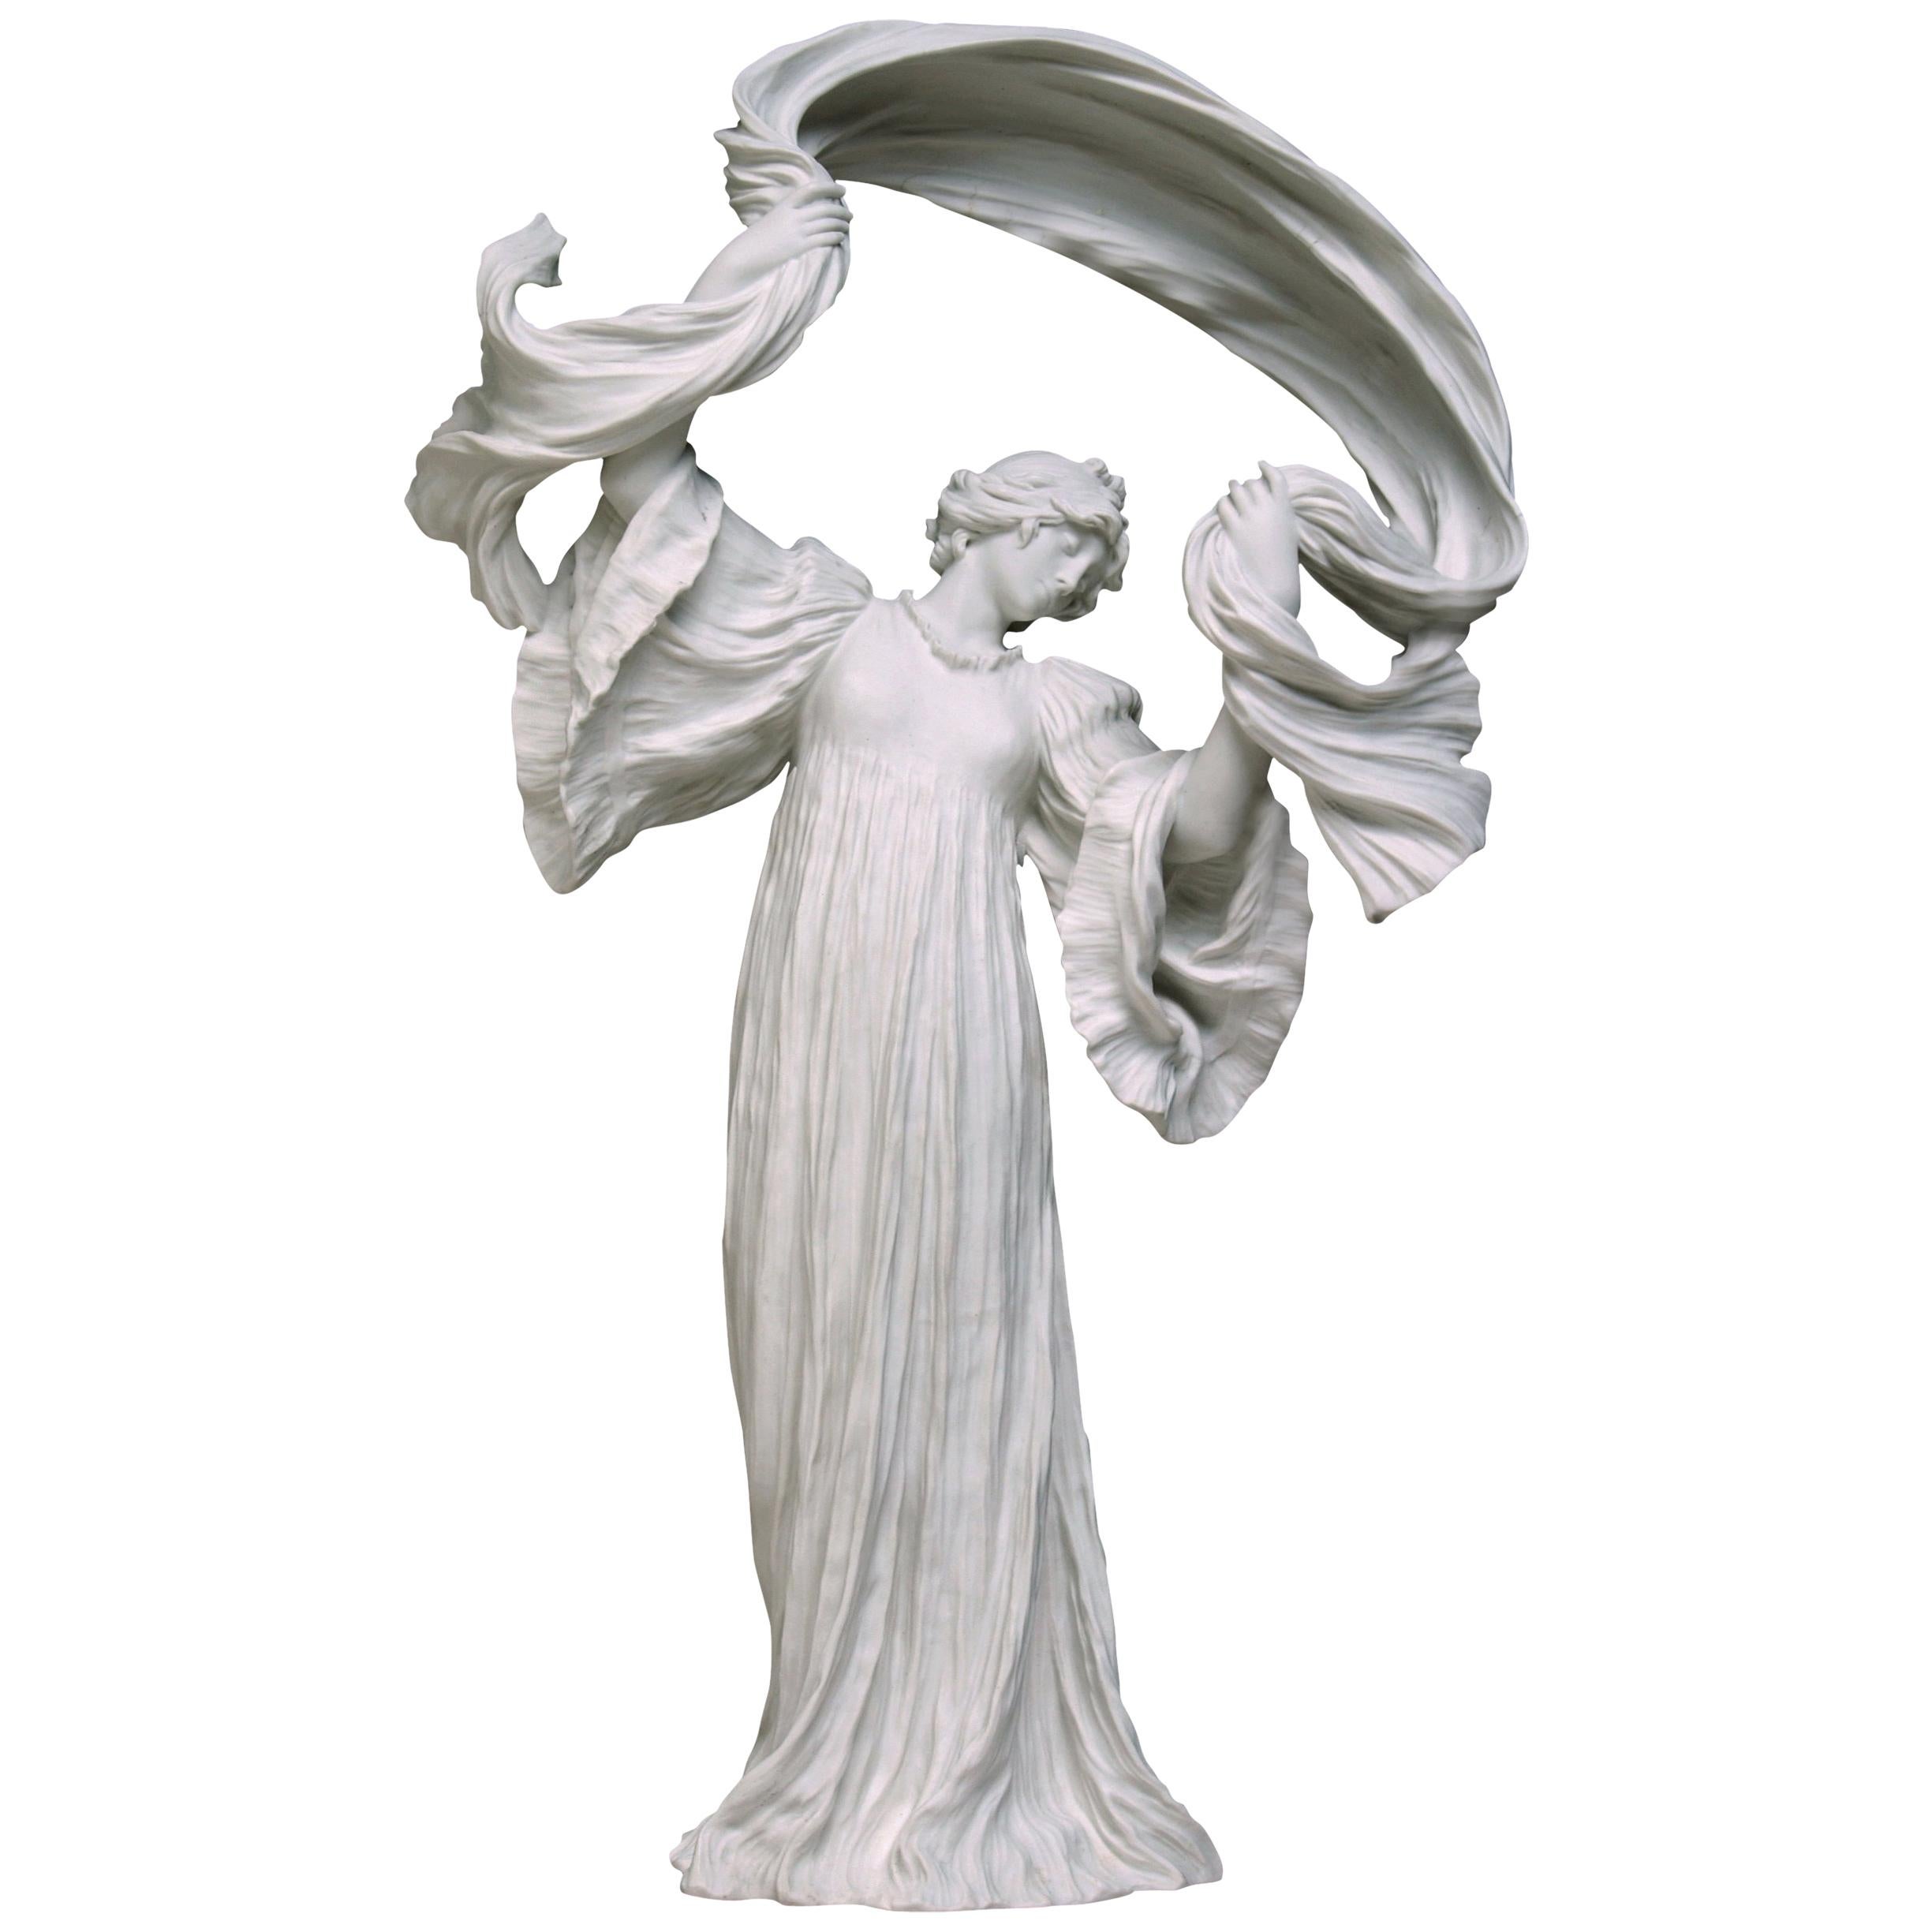 Agathon Léonard Porcelain Figure "Danseur" by Manufacture Nationale de Sèvres For Sale